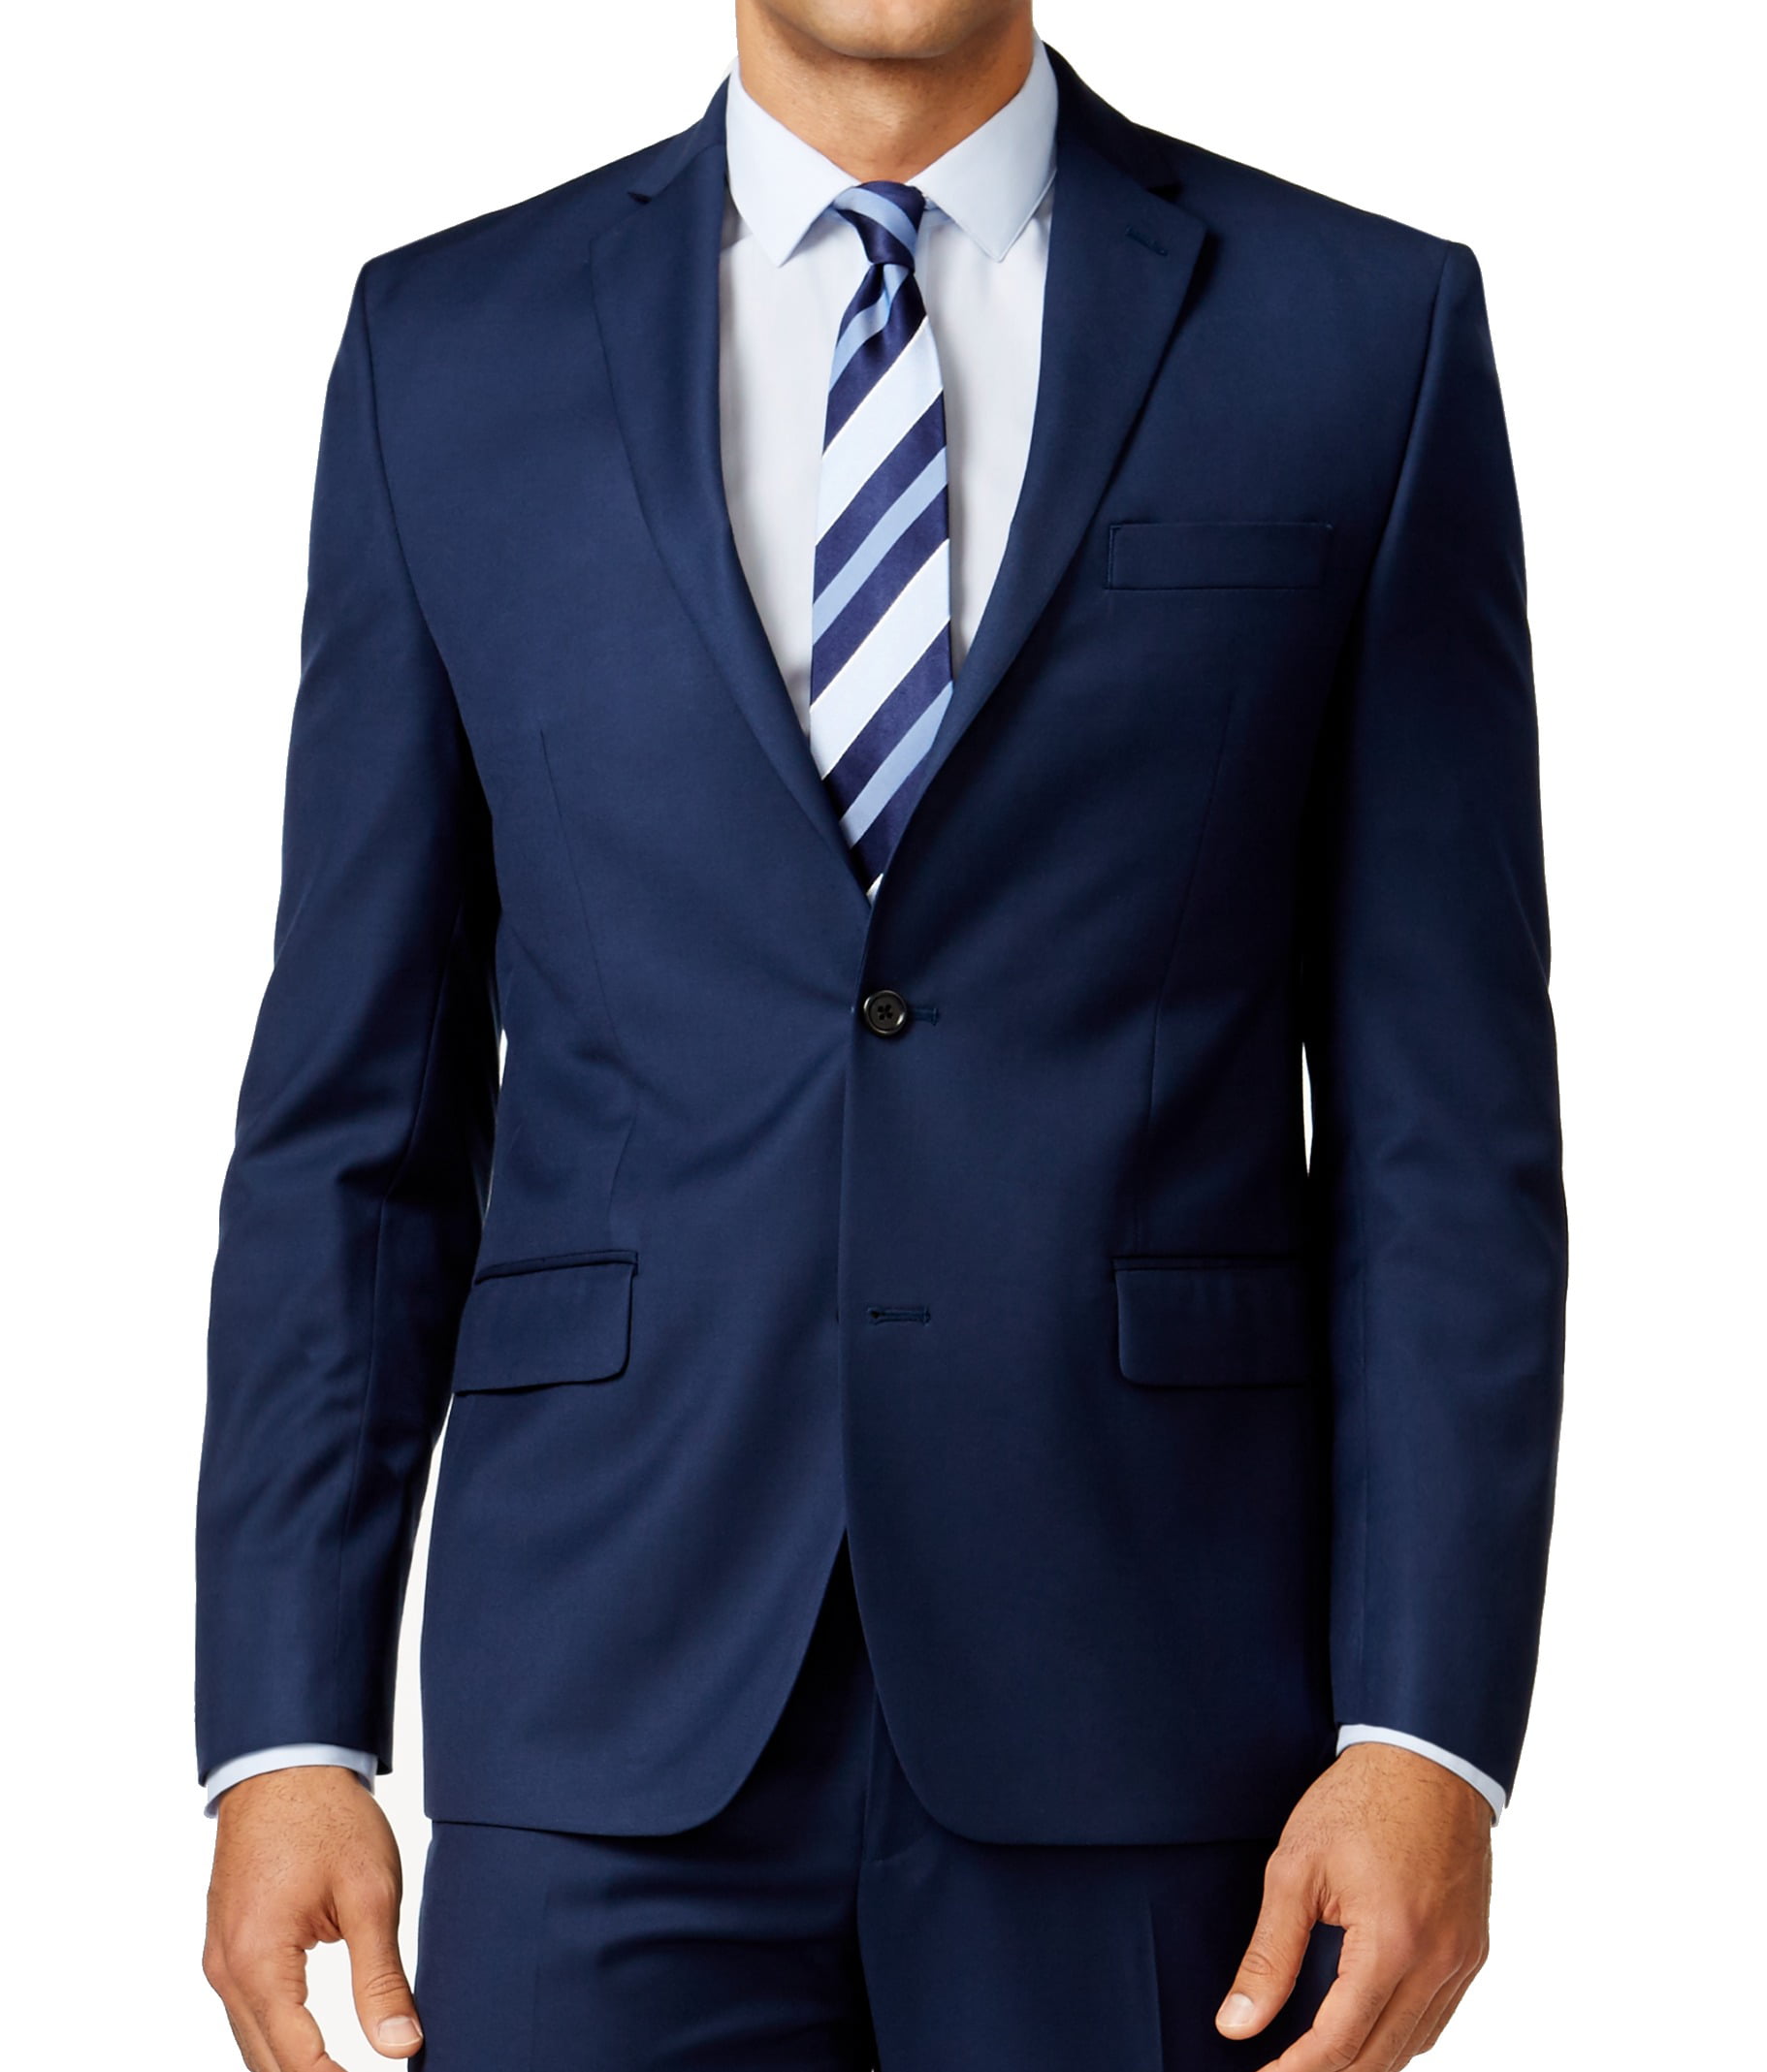 Michael Kors Suits & Suit Separates - Mens Blazer Navy Two Button Notch ...